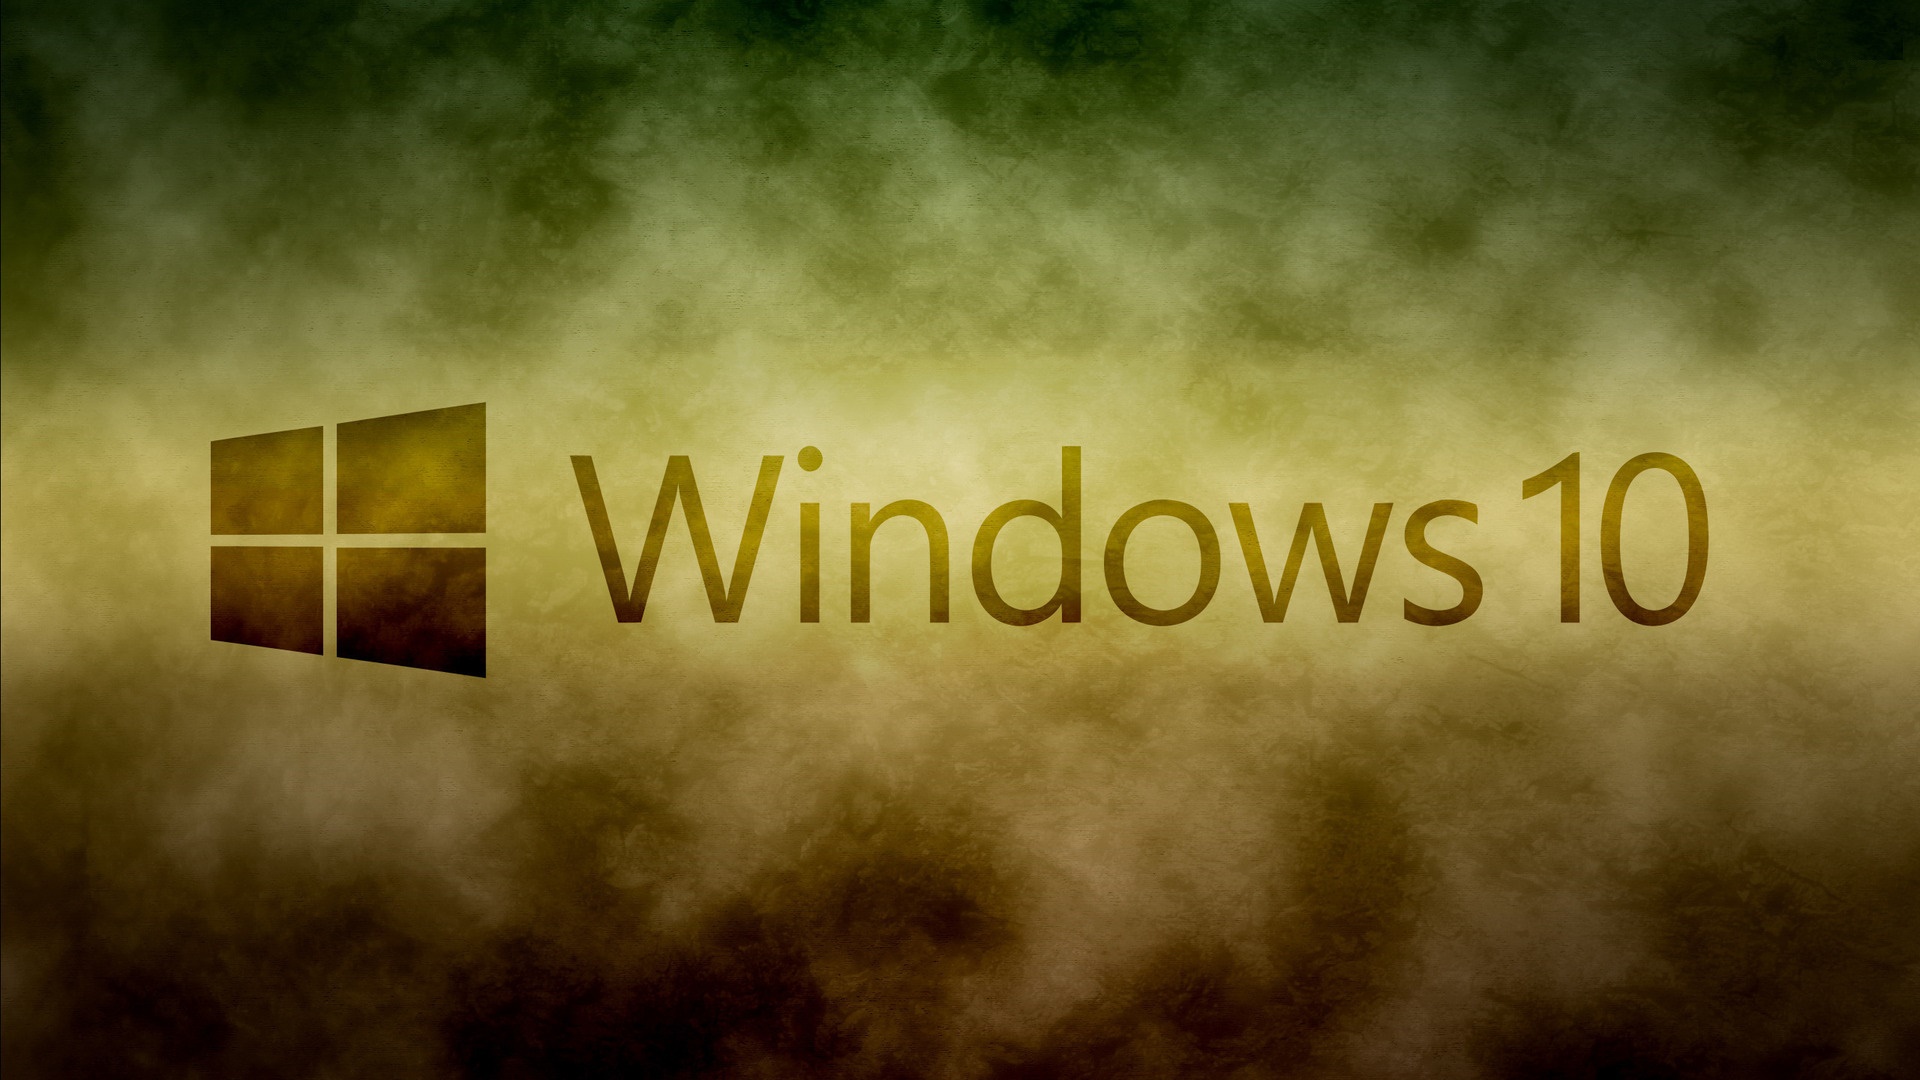 Windows Desktop Images Windows 10 Pro Backgrounds